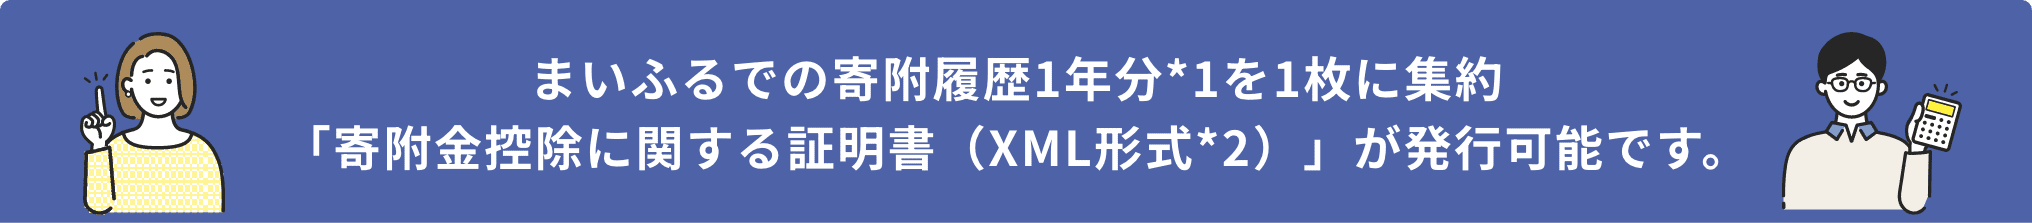 まいふるでの寄附履歴1年分*1を1枚に集約「寄附金控除に関する証明書（XML形式*2）」が発行可能です。